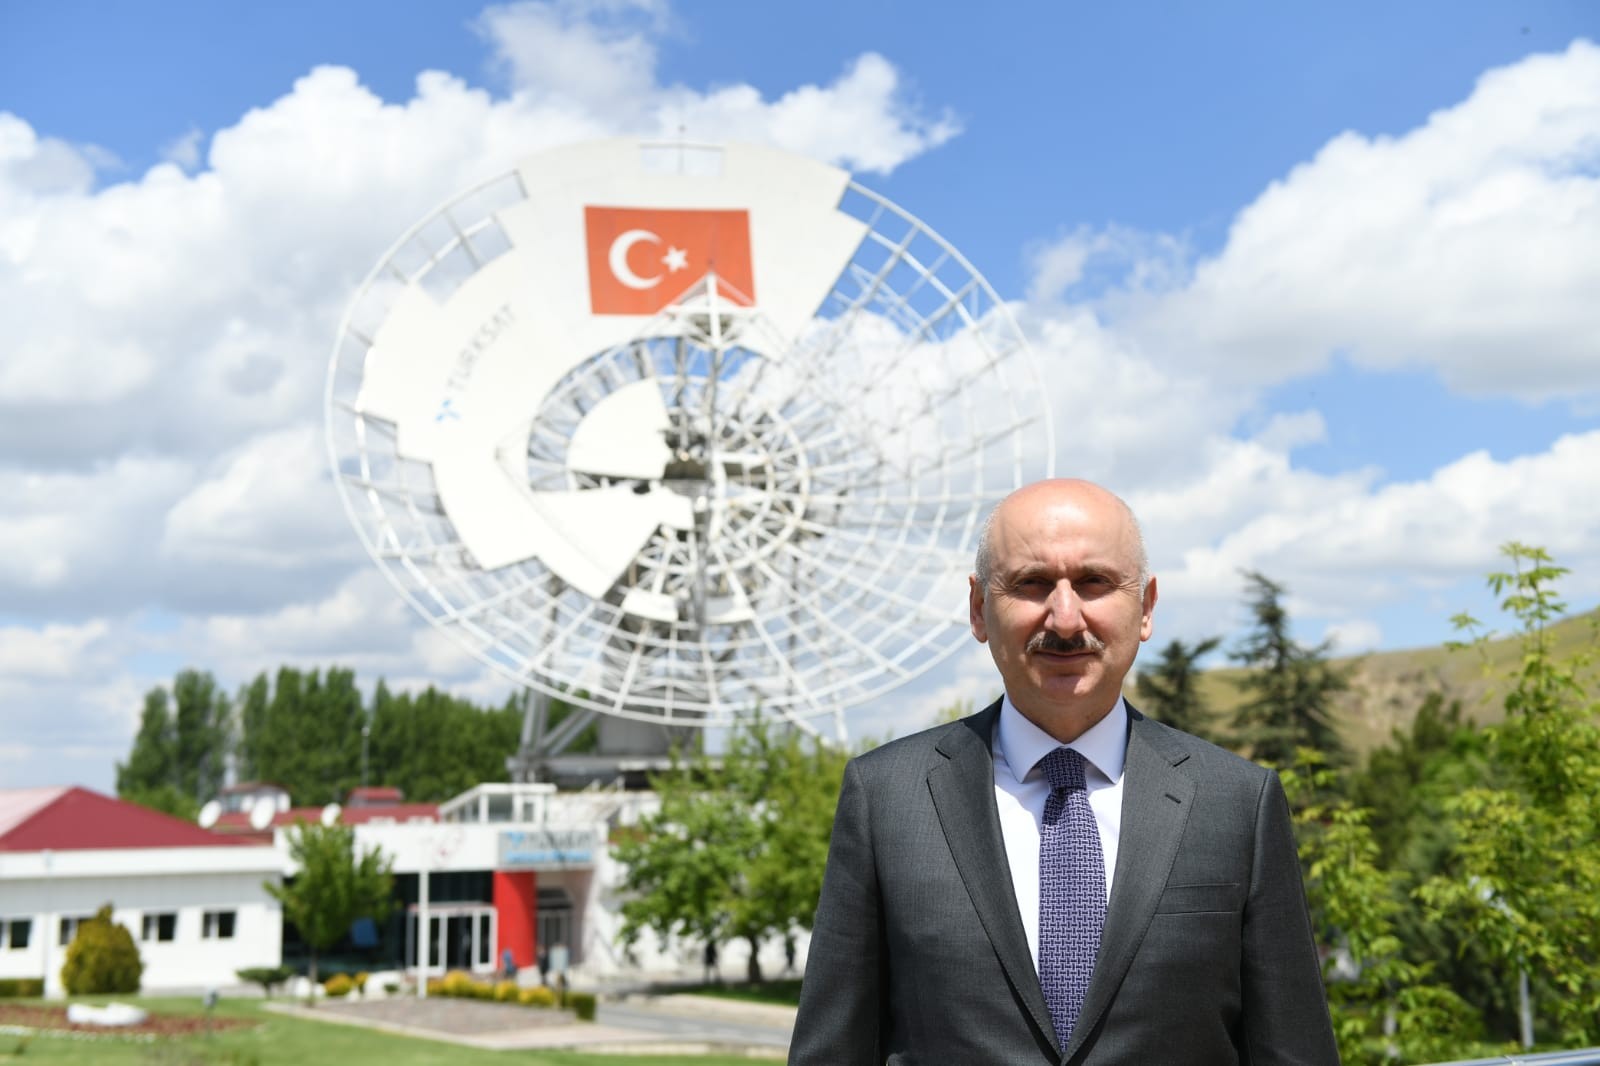 Karaismailoğu müjdeyi verdi :Türksat 5B 2021, Türksat 6A 2022'de uzaya gönderilecek